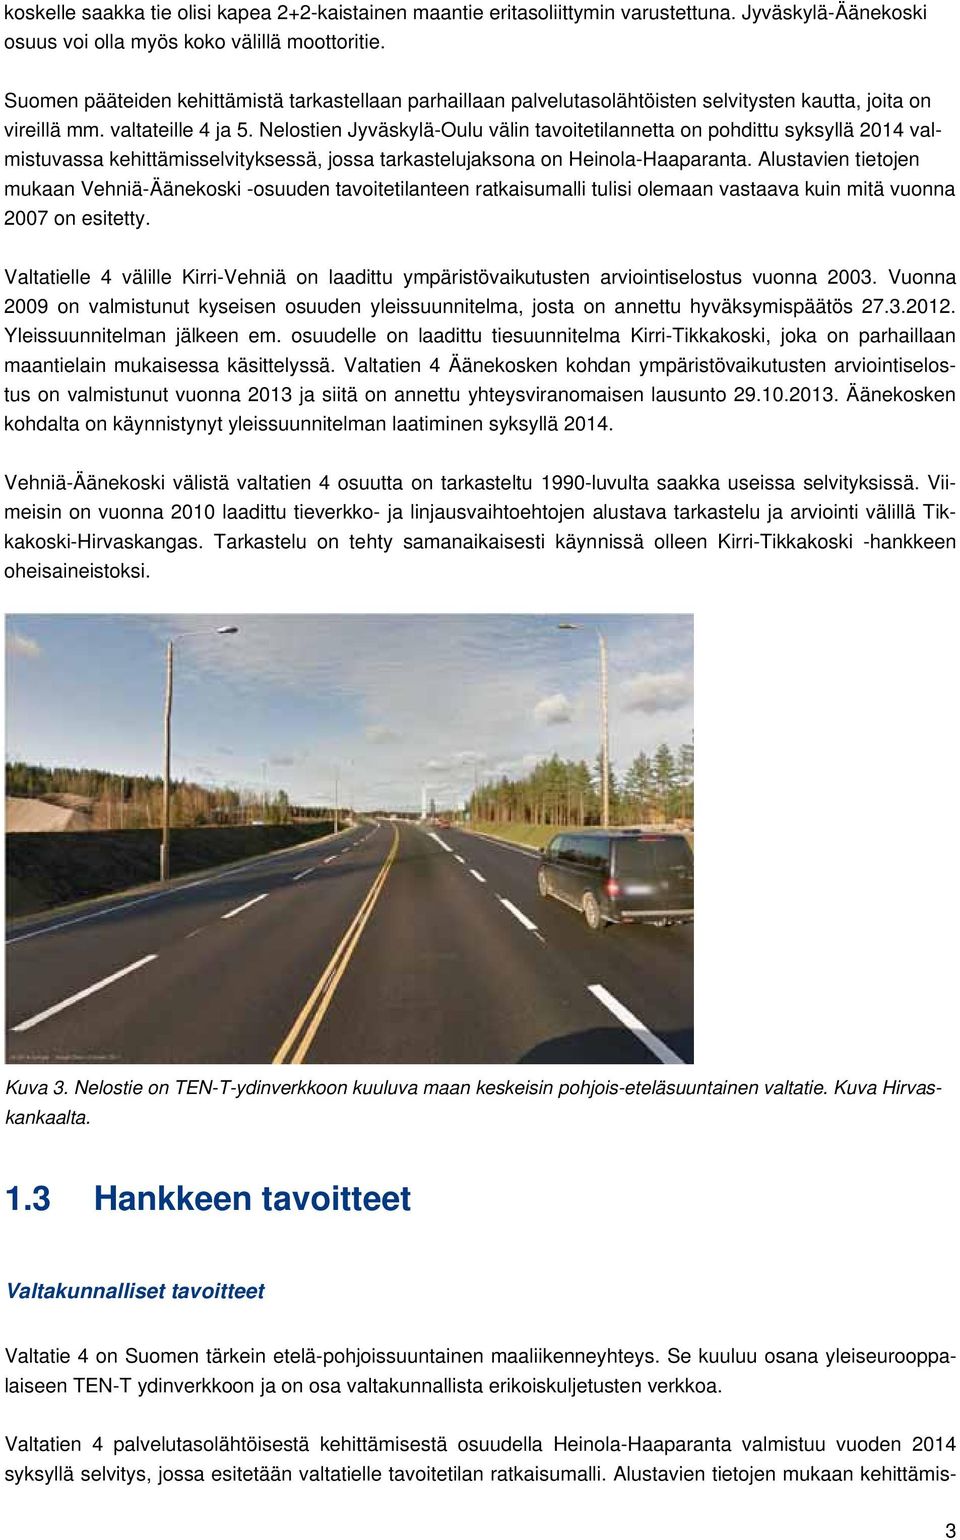 Nelostien Jyväskylä-Oulu välin tavoitetilannetta on pohdittu syksyllä 2014 valmistuvassa kehittämisselvityksessä, jossa tarkastelujaksona on Heinola-Haaparanta.